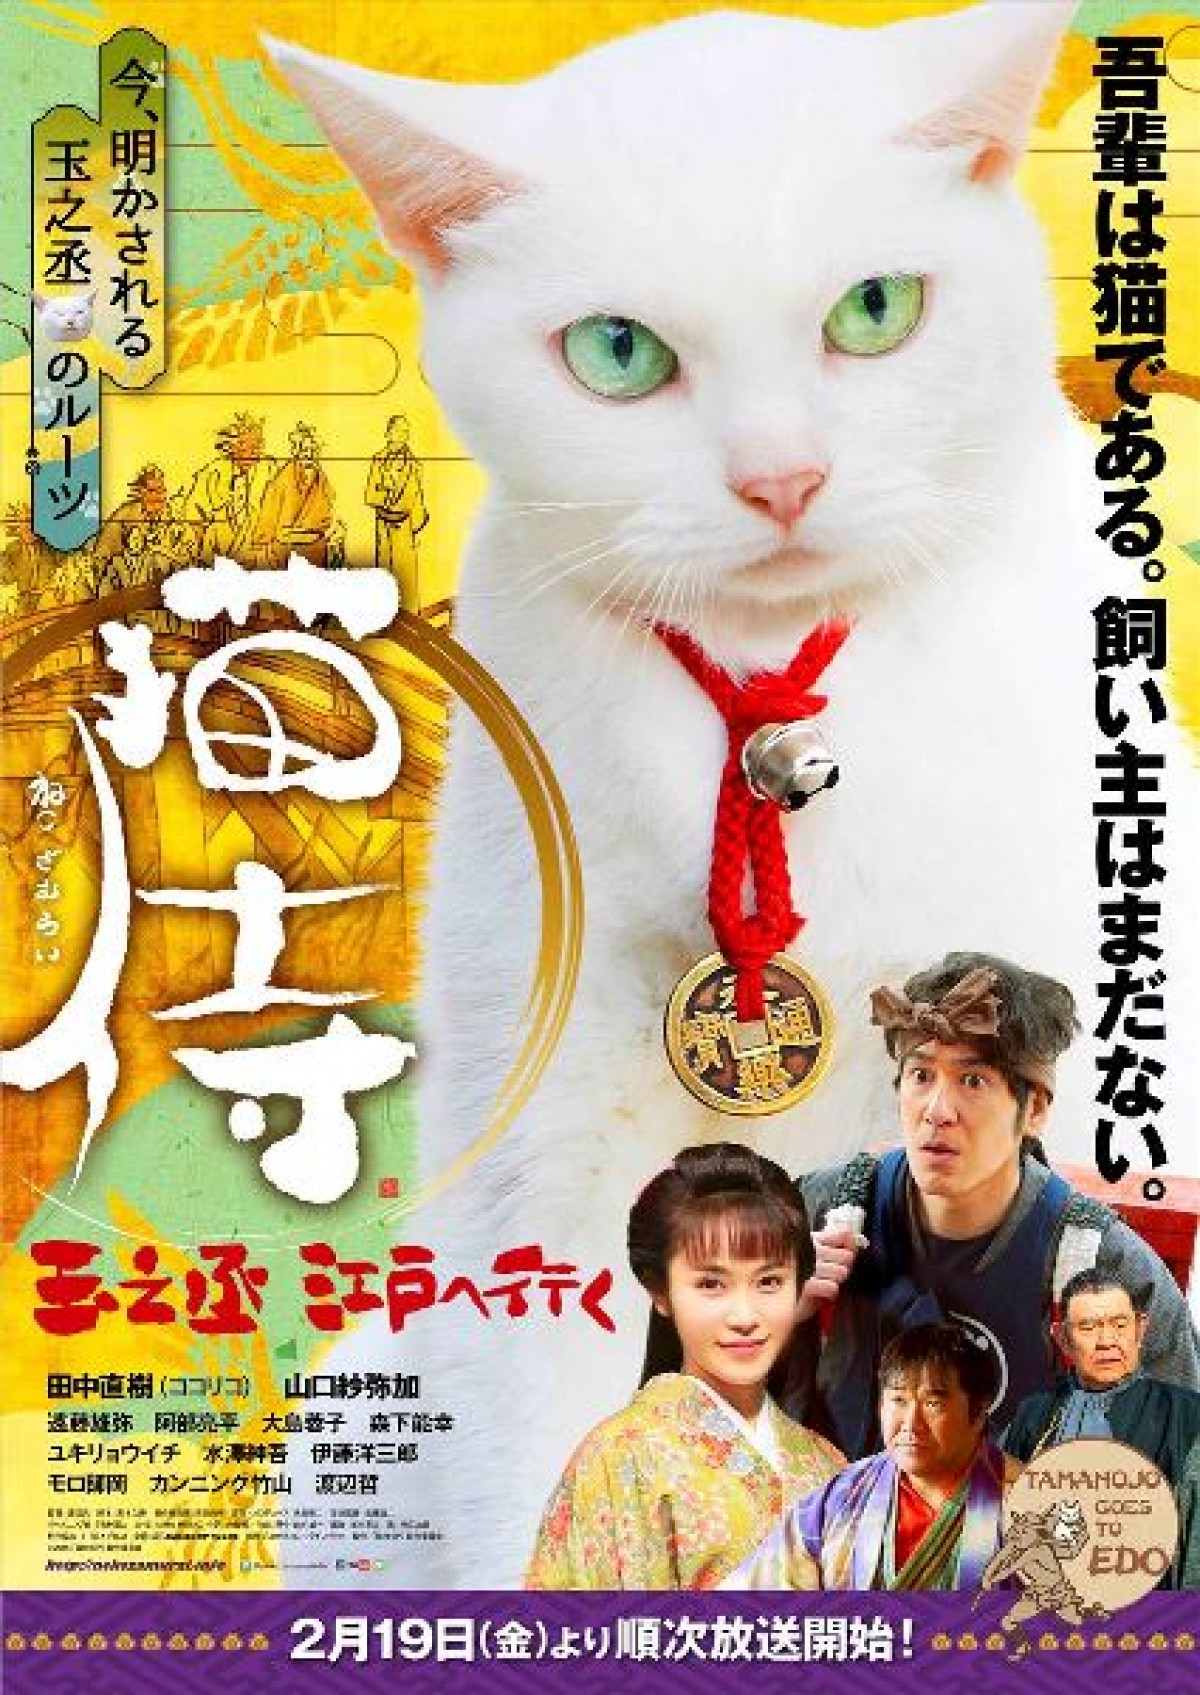 Samurai Cat: Tamanojo Goes to Edo (2016) with English Subtitles on DVD on DVD